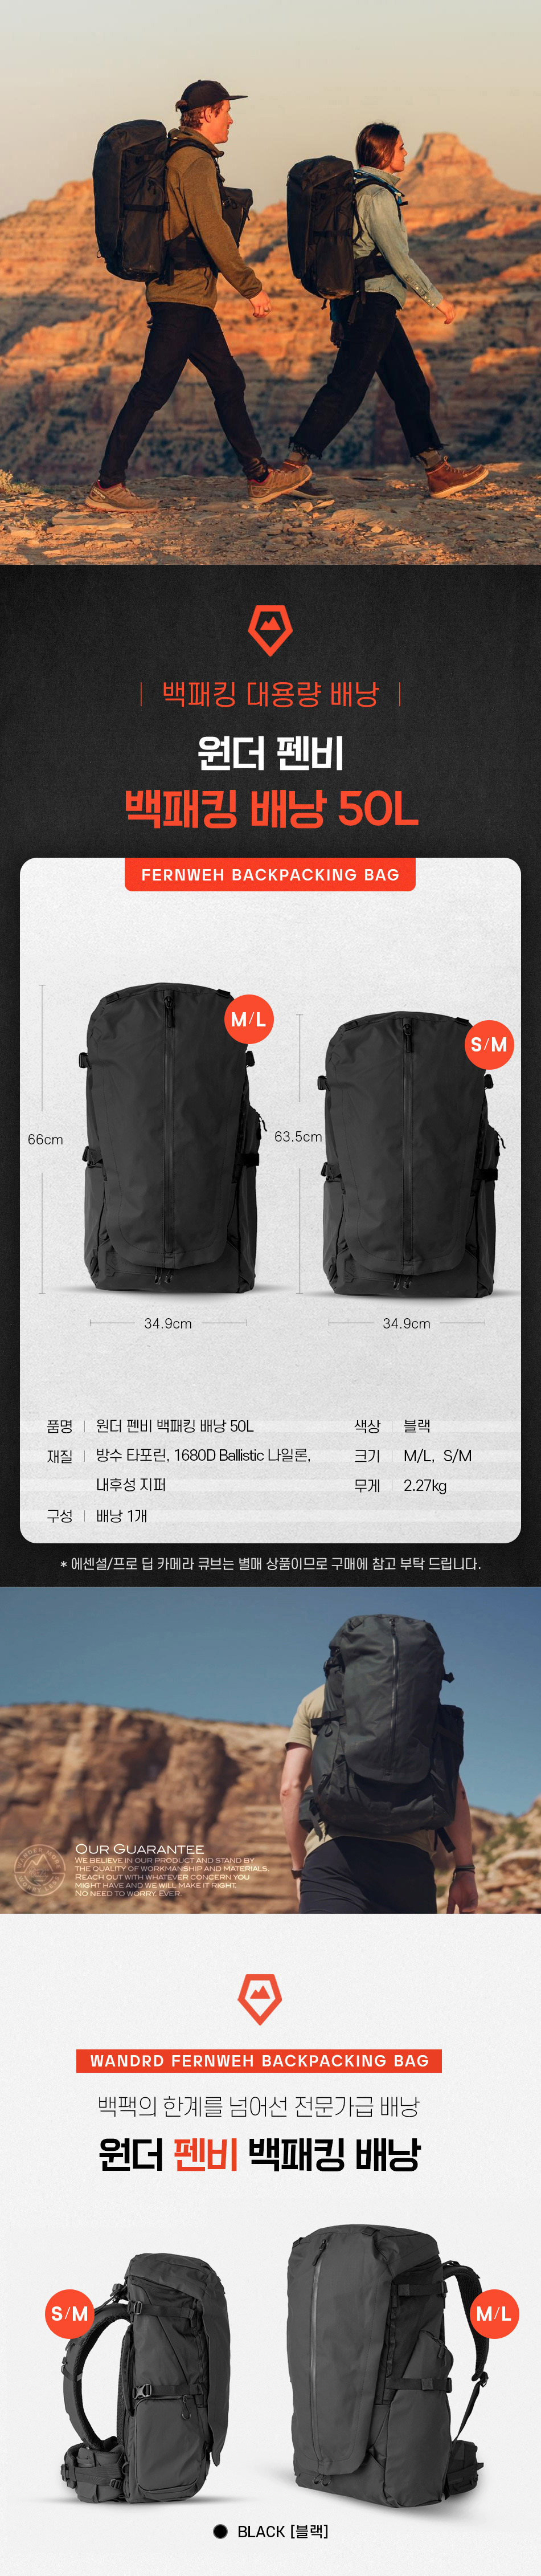 fernweh_backpacking_bag_50l_01.jpg